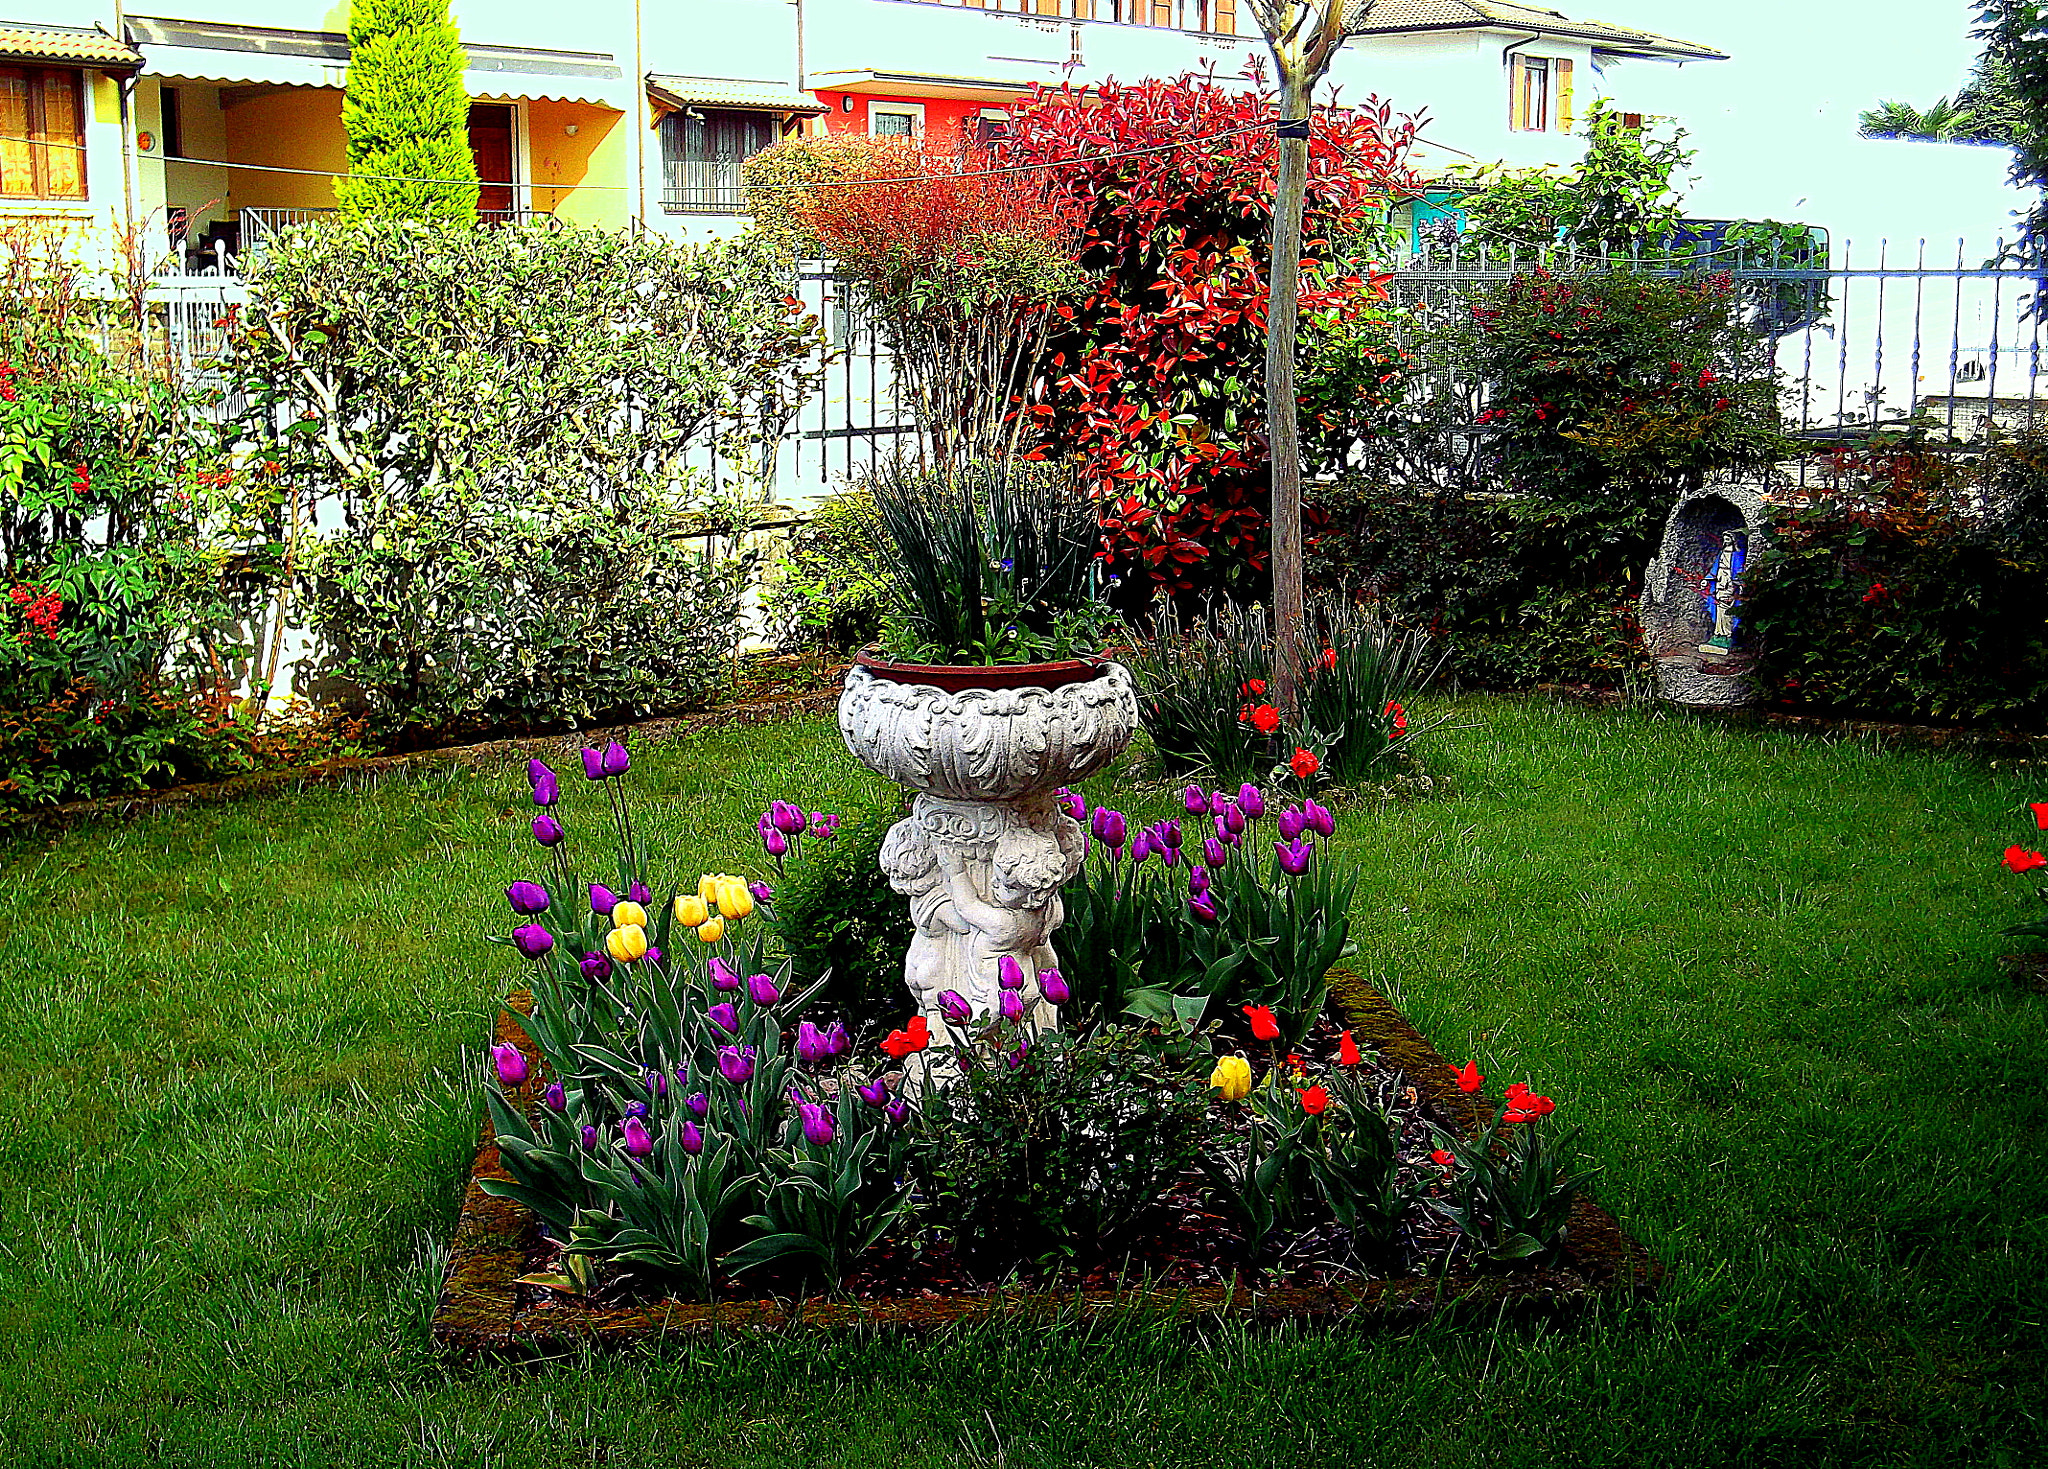 Fujifilm FinePix JX250 sample photo. Fiori di primavera in giardino. photography